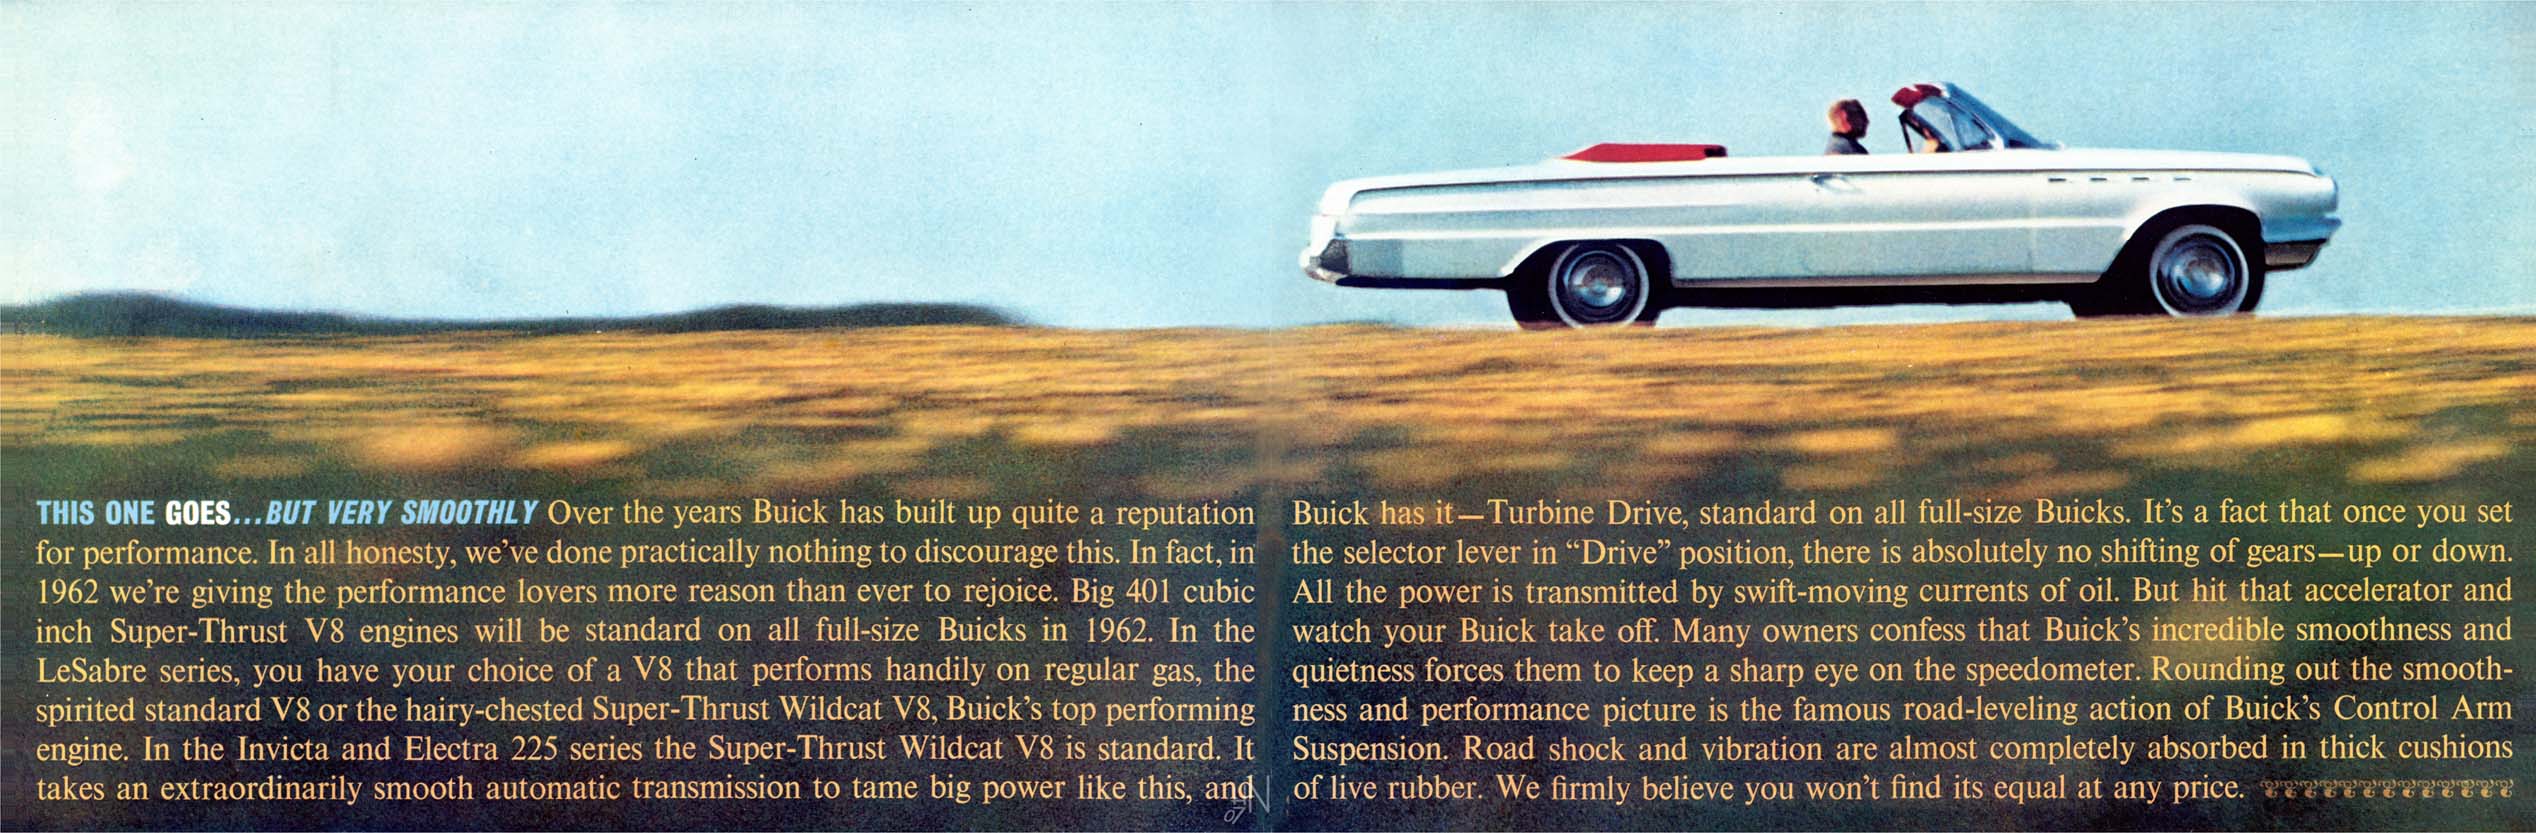 1962 Buick Full Line-32-33